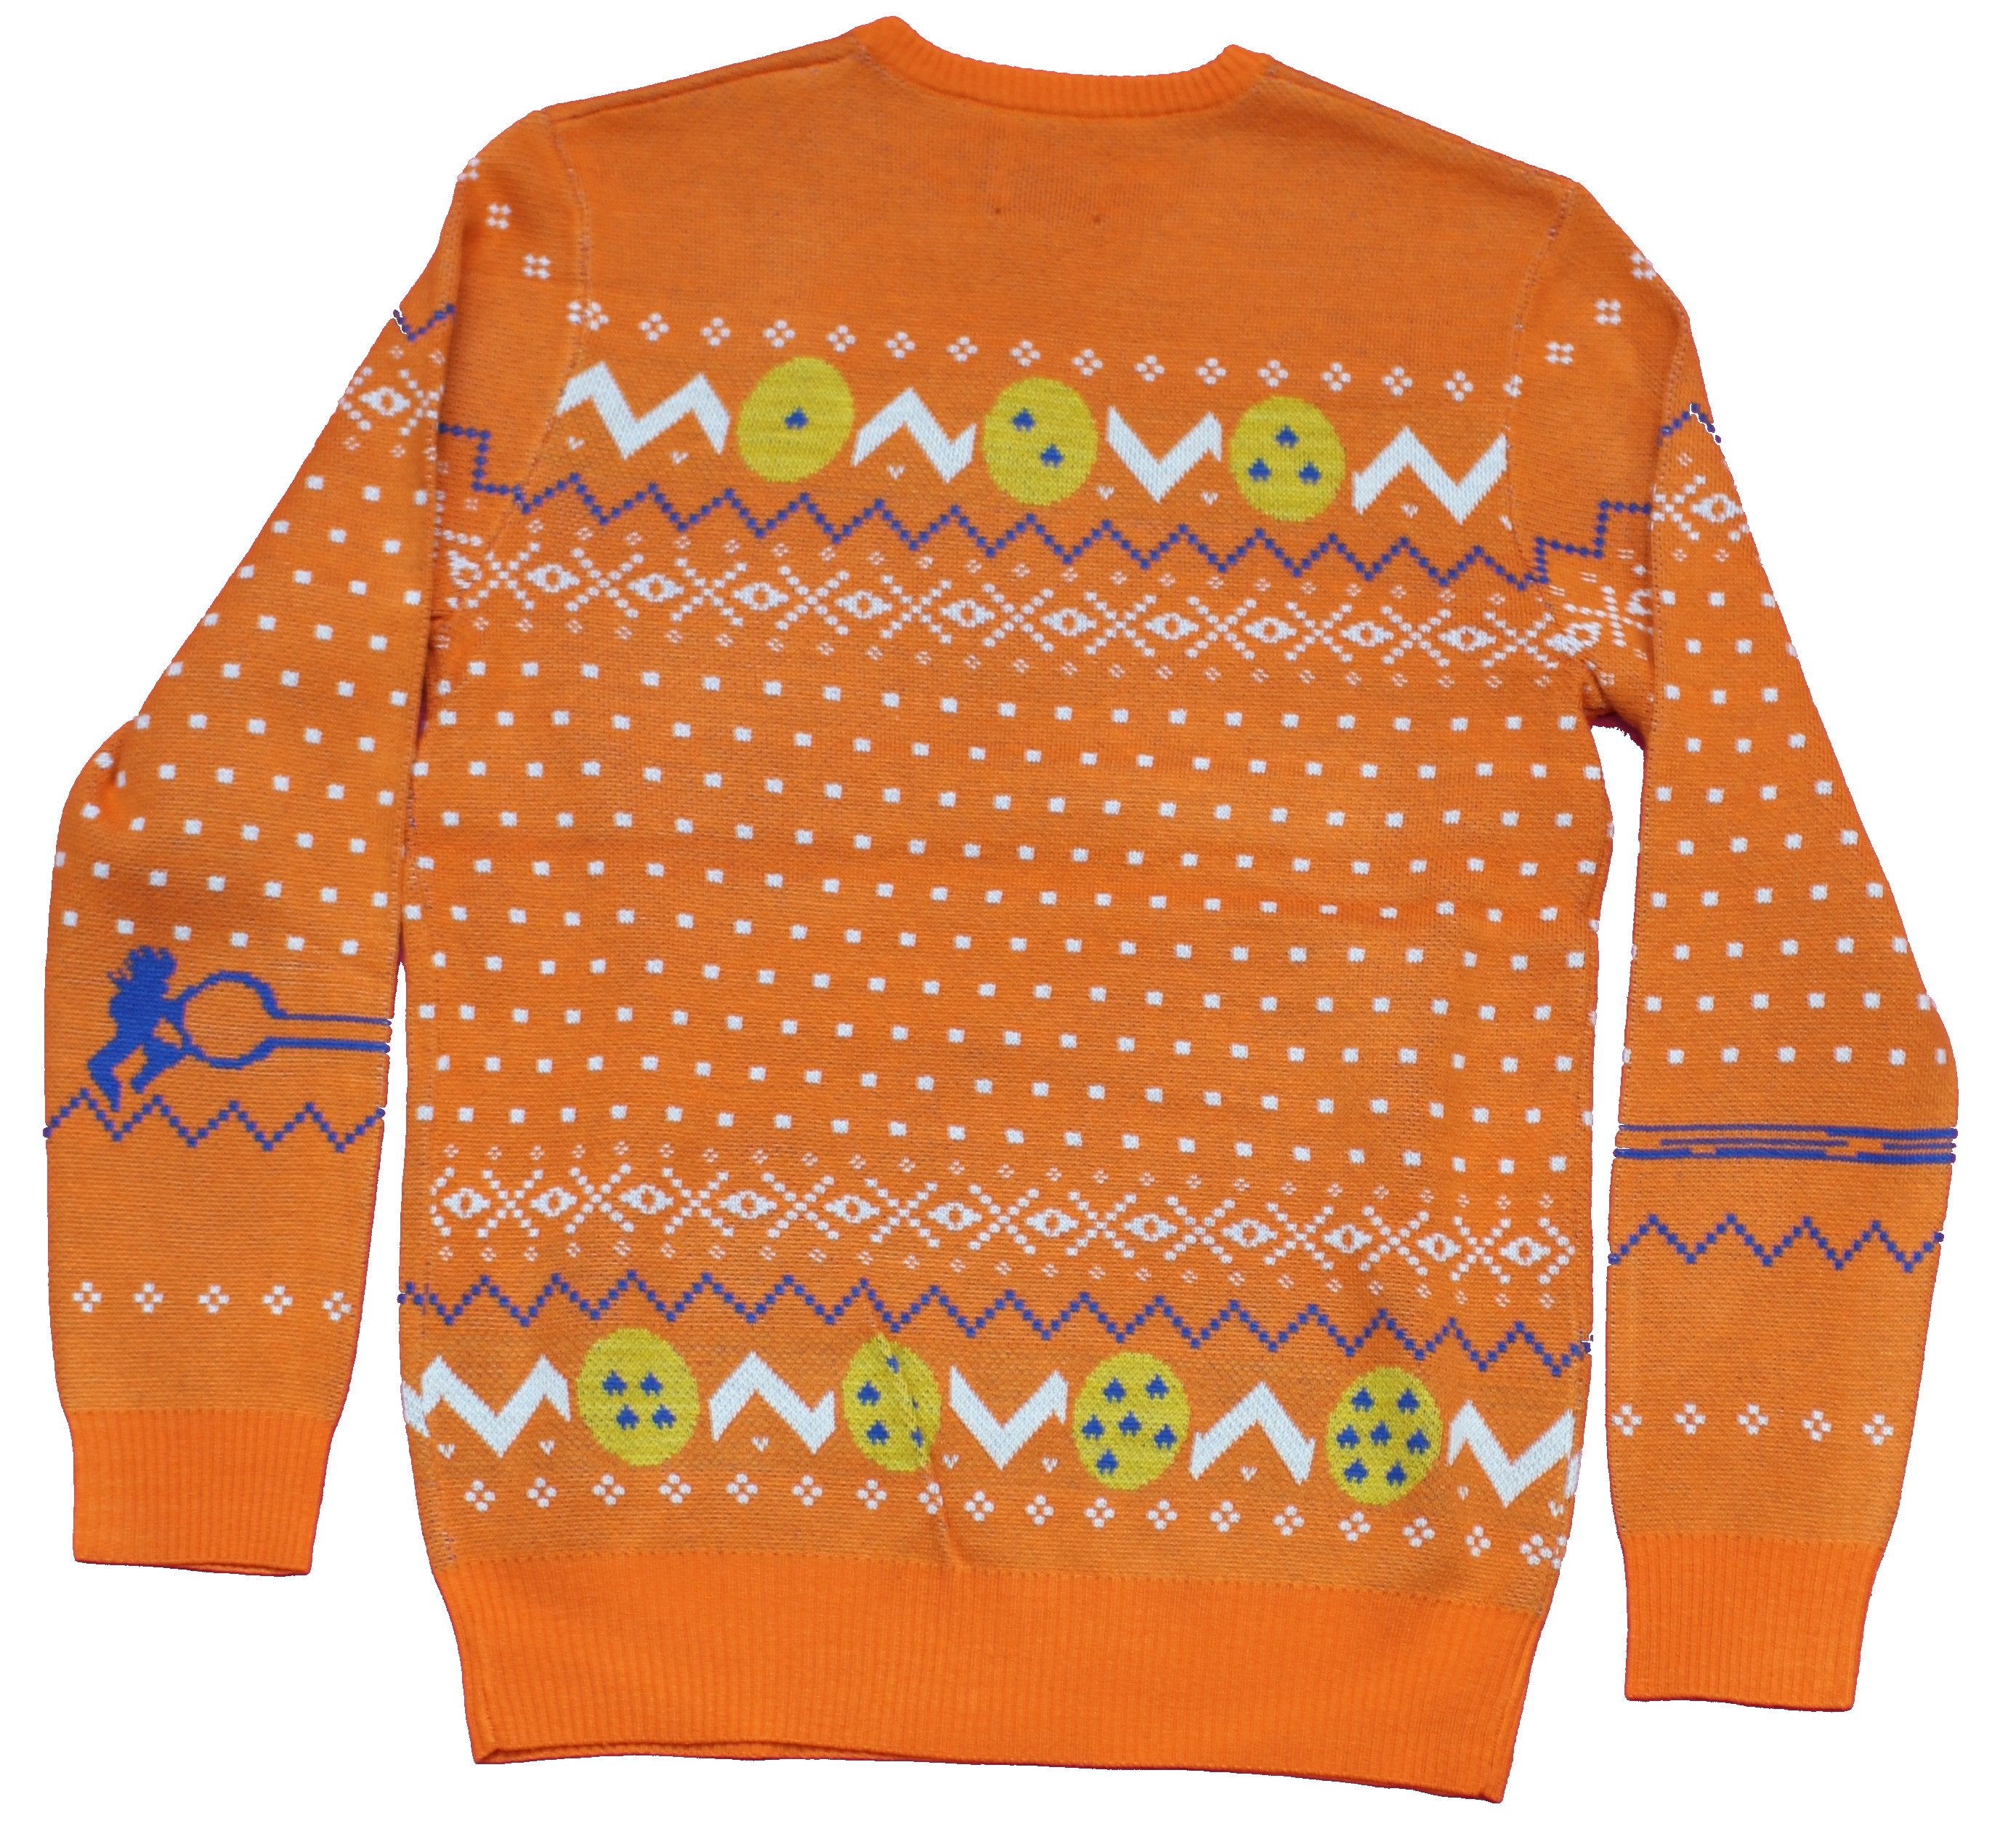 Dragonball Z Mens Christmas Sweater - Kamehameha Style